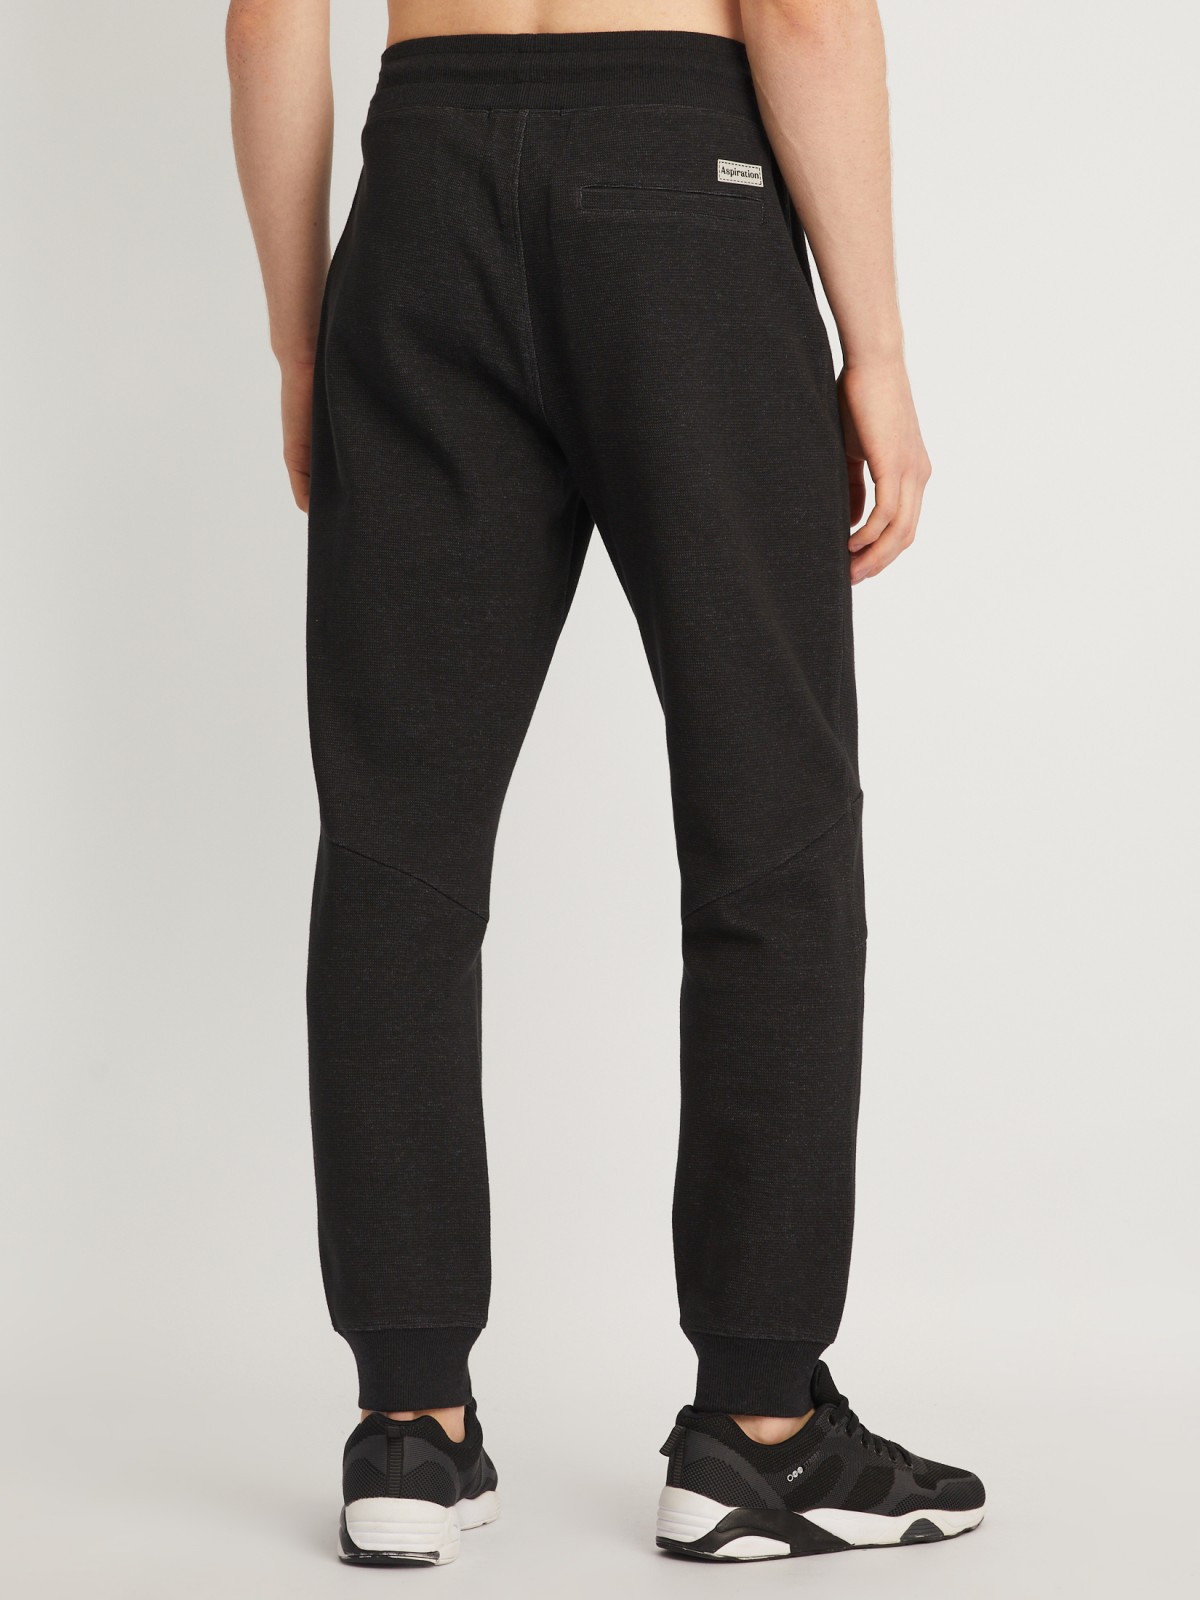 Трикотажные брюки-джоггеры в спортивном стиле zolla 014127679013, цвет черный, размер S - фото 5